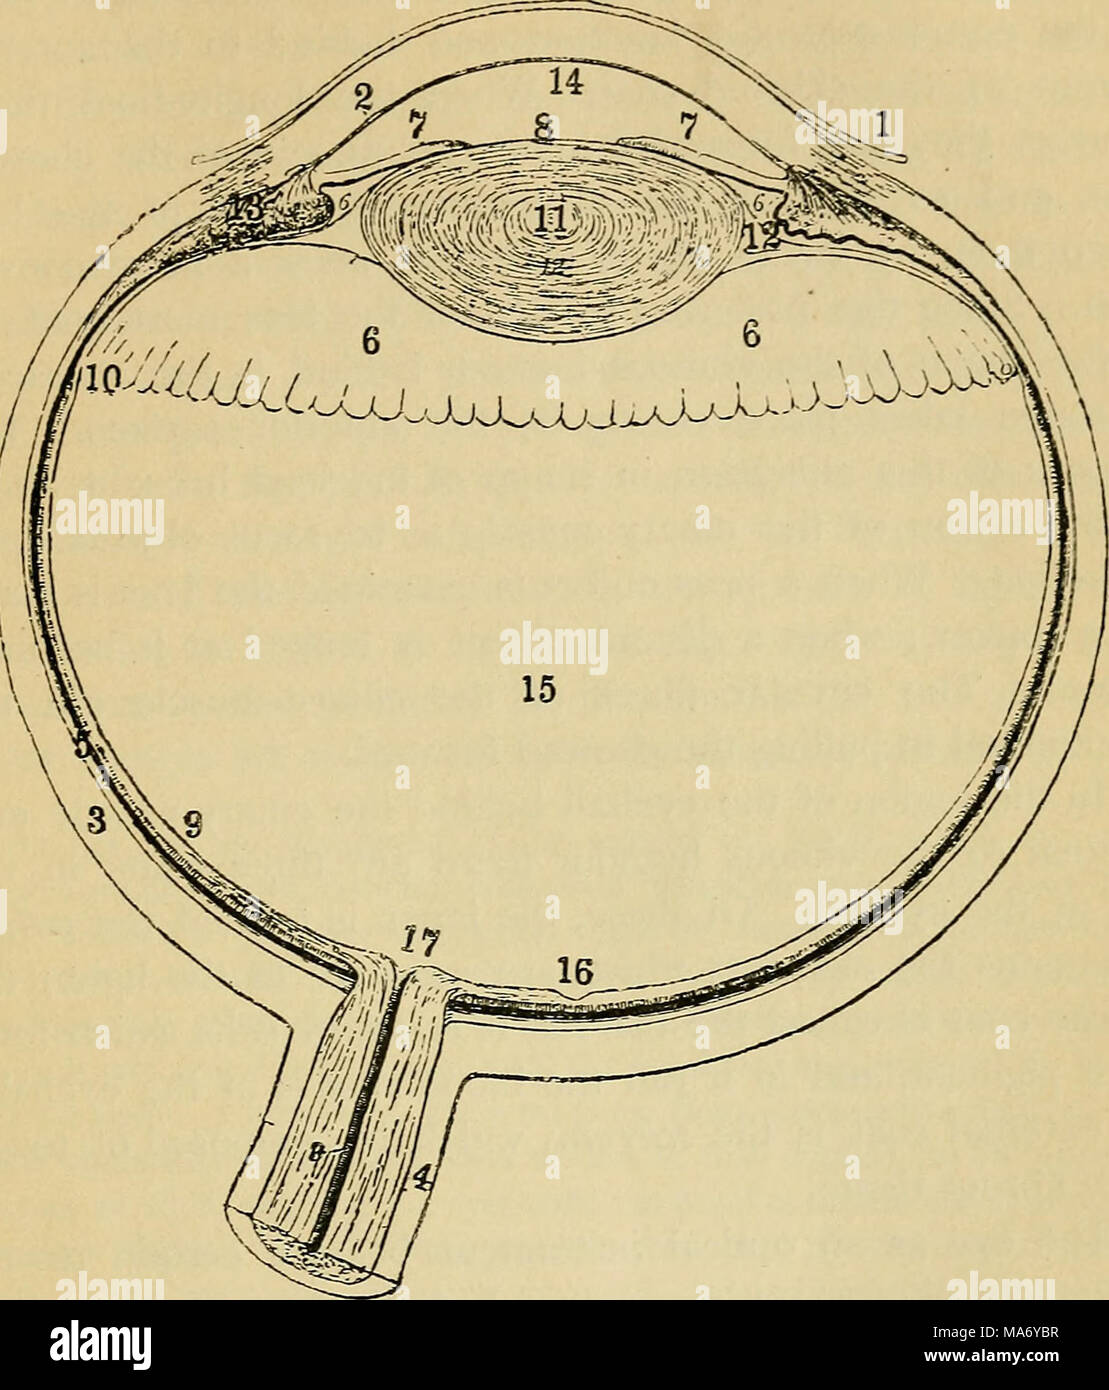 . Fisiologia elementare . Fig. 123.-vista dell umana ej'e, suddiviso orizzontalmente attraverso il centro. Ho, congiuntiva; 2, cornea; 3, sclerotiche; 4, la guaina del nervo ottico; 5, coroide; 6, i processi ciliari ; 7, iris; 8, allievo ; 9, retina ; 10, limite anteriore della retina ; II, crj'stalline lente ; 12, legamento sospensivo ; 13, muscolo ciliare ; 14, la camera anteriore; 15, nella camera posteriore ; i6, giallo posto; 17, cieco. è completamente riempita da una chiara massa gelatinosa denominato umor vitreo. L'iris si trova nella camera anteriore nella parte anteriore della lente e la sua variabile apertm centrale-e (p Foto Stock